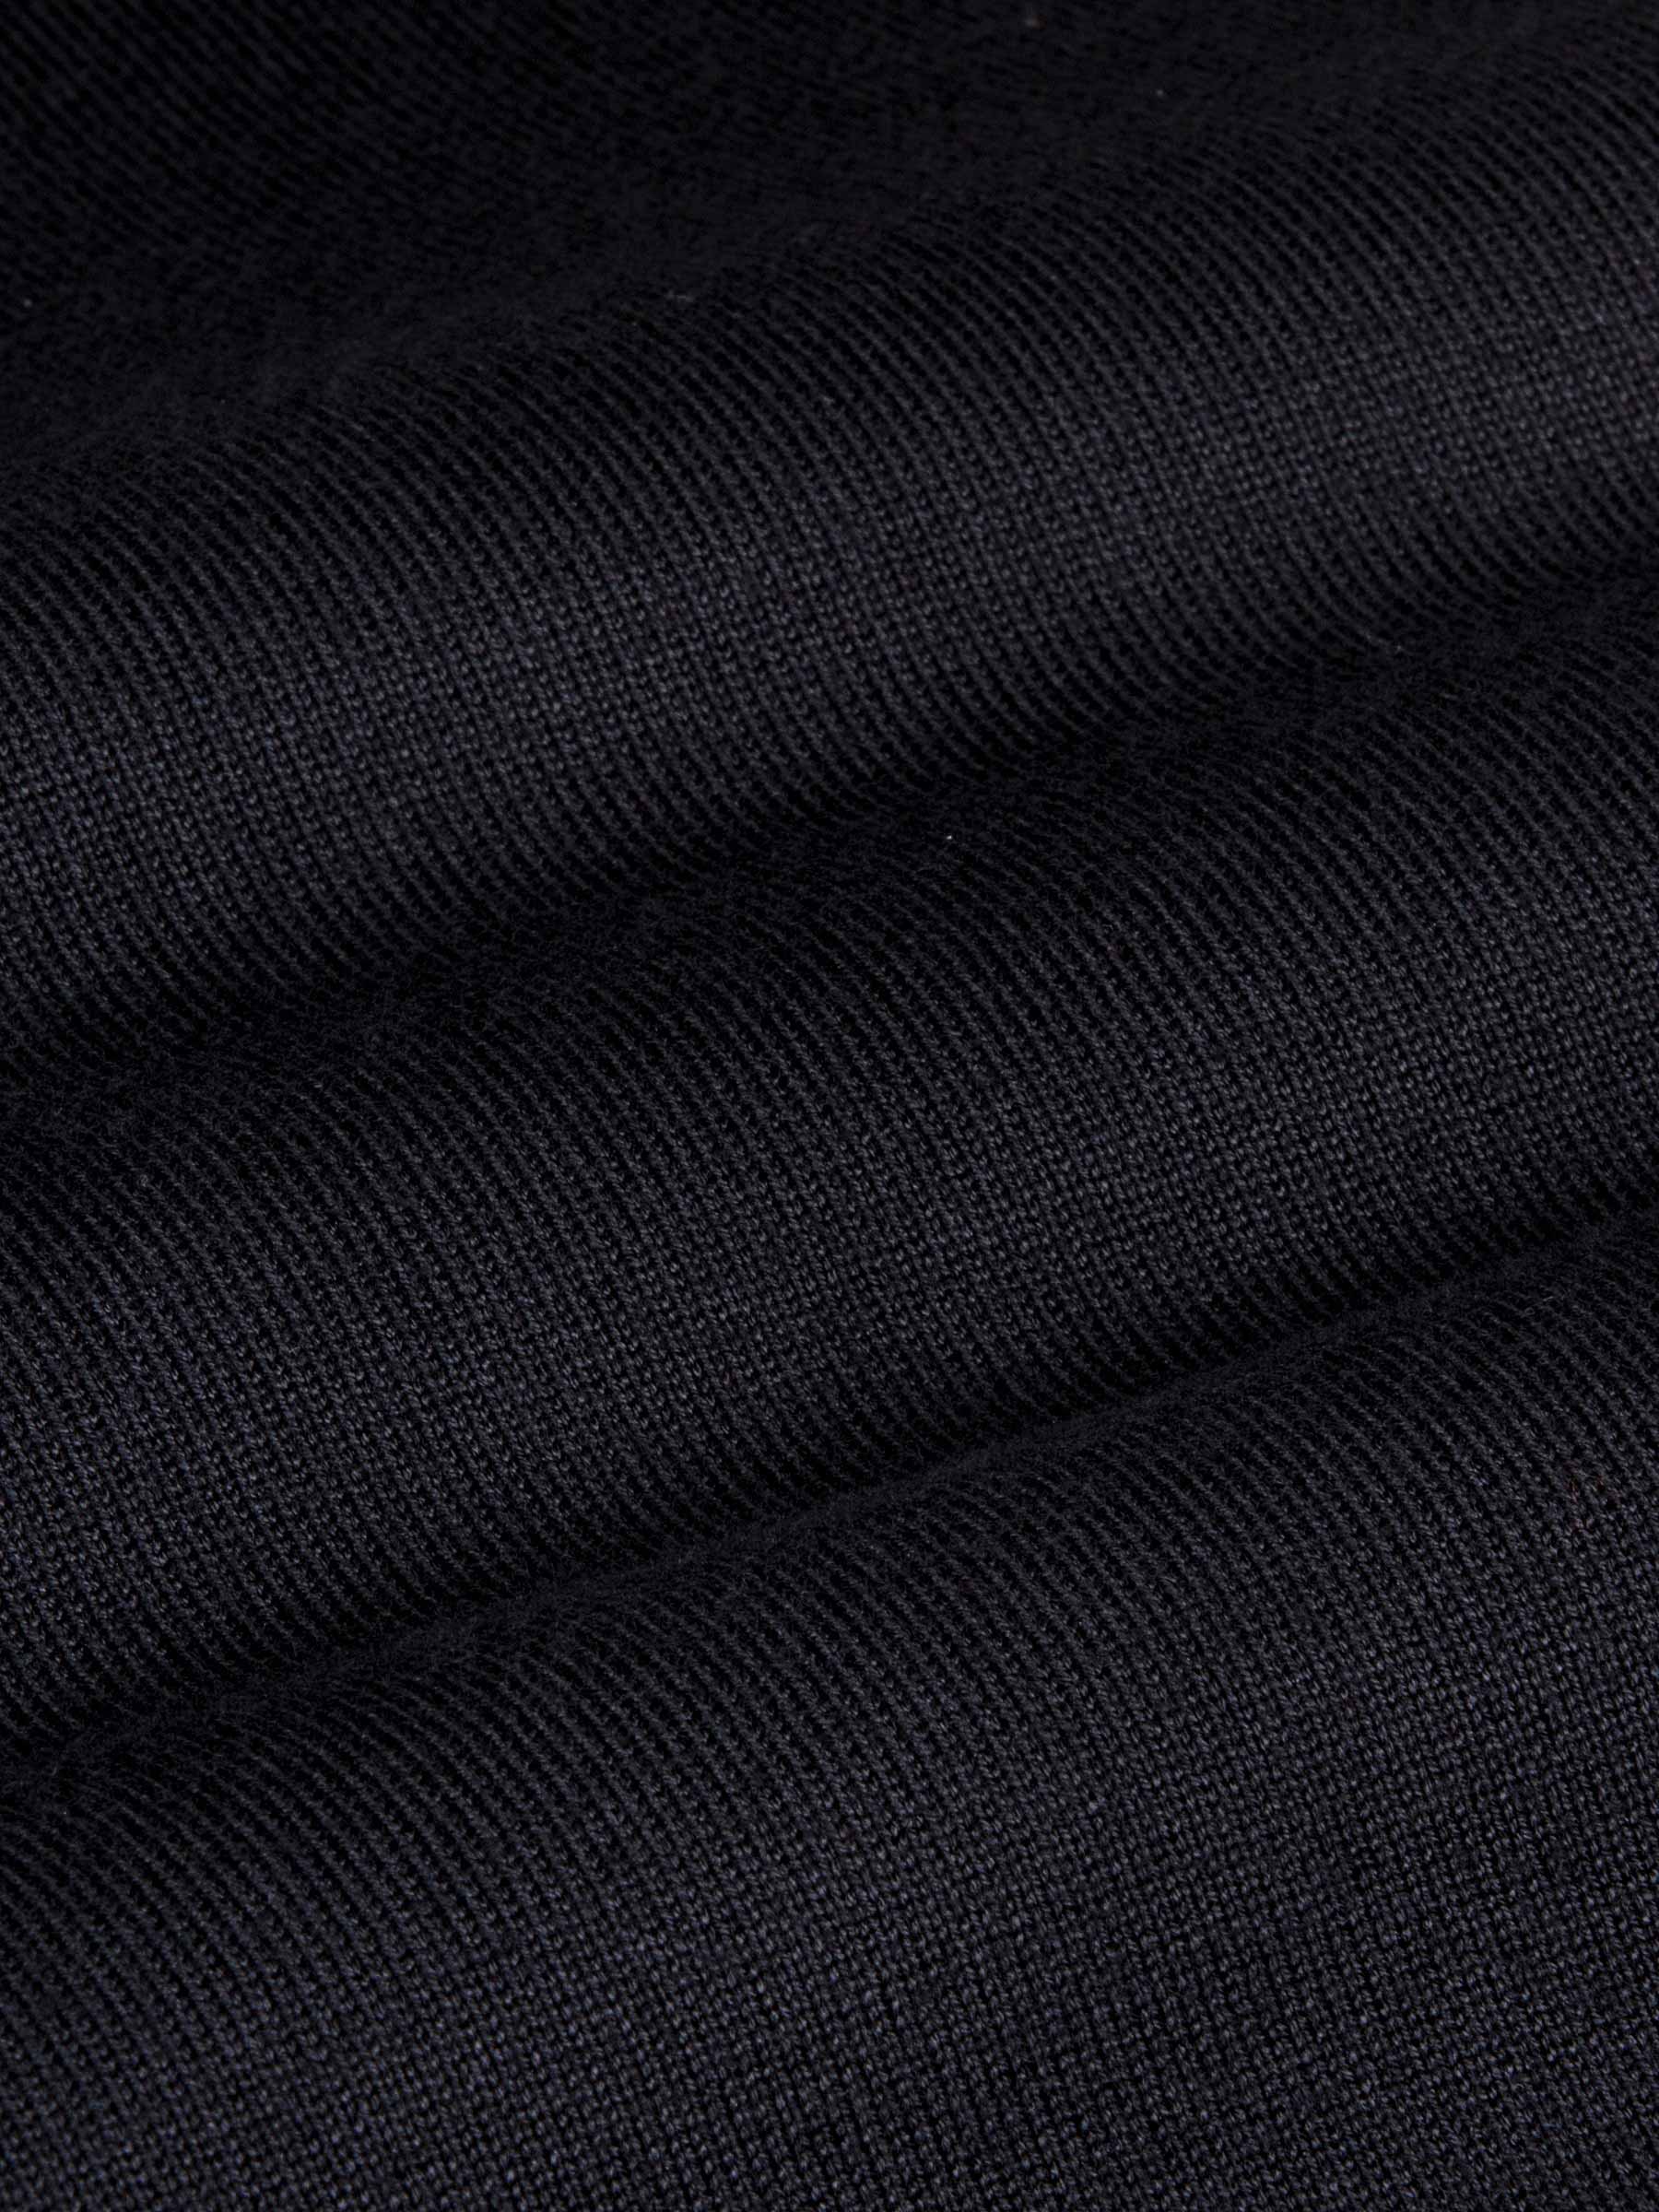 Siena Round-Necked Black Sweater-L